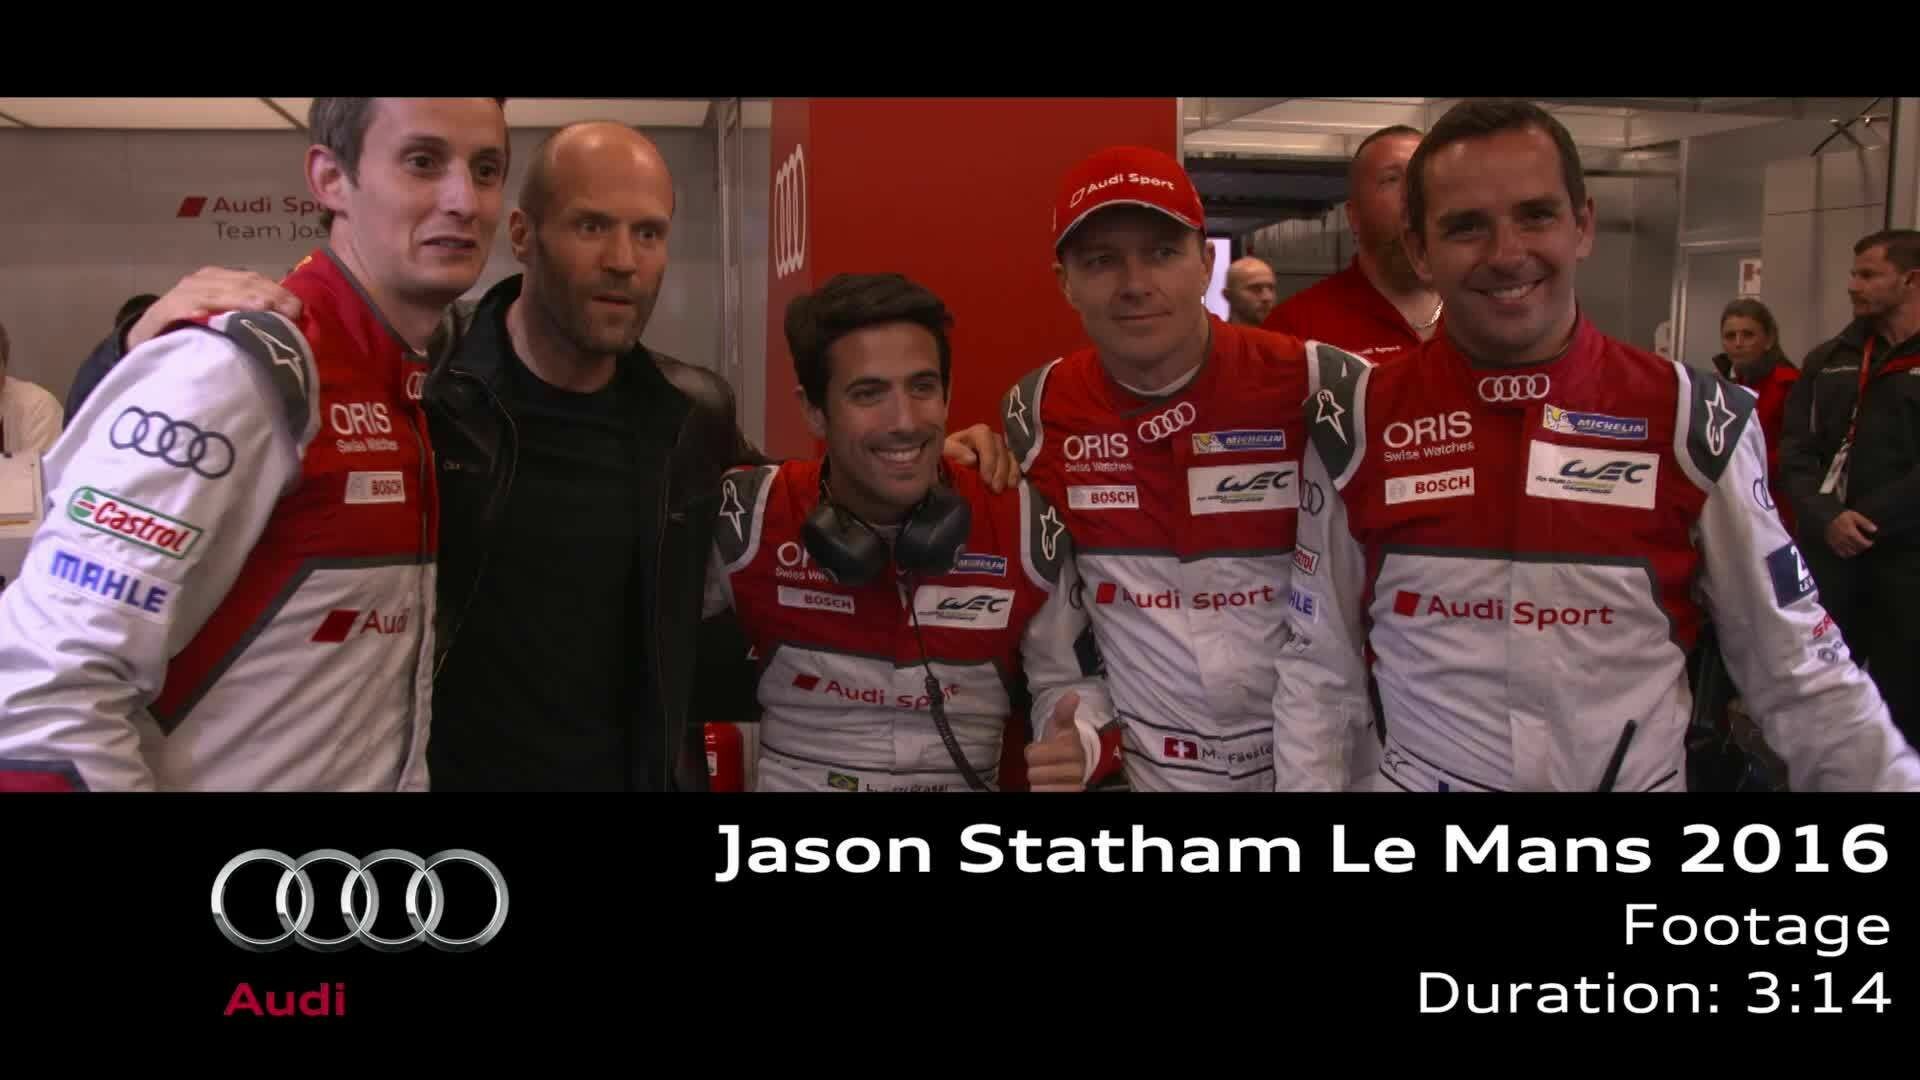 Jason Statham zu Gast bei Audi in Le Mans - Footage